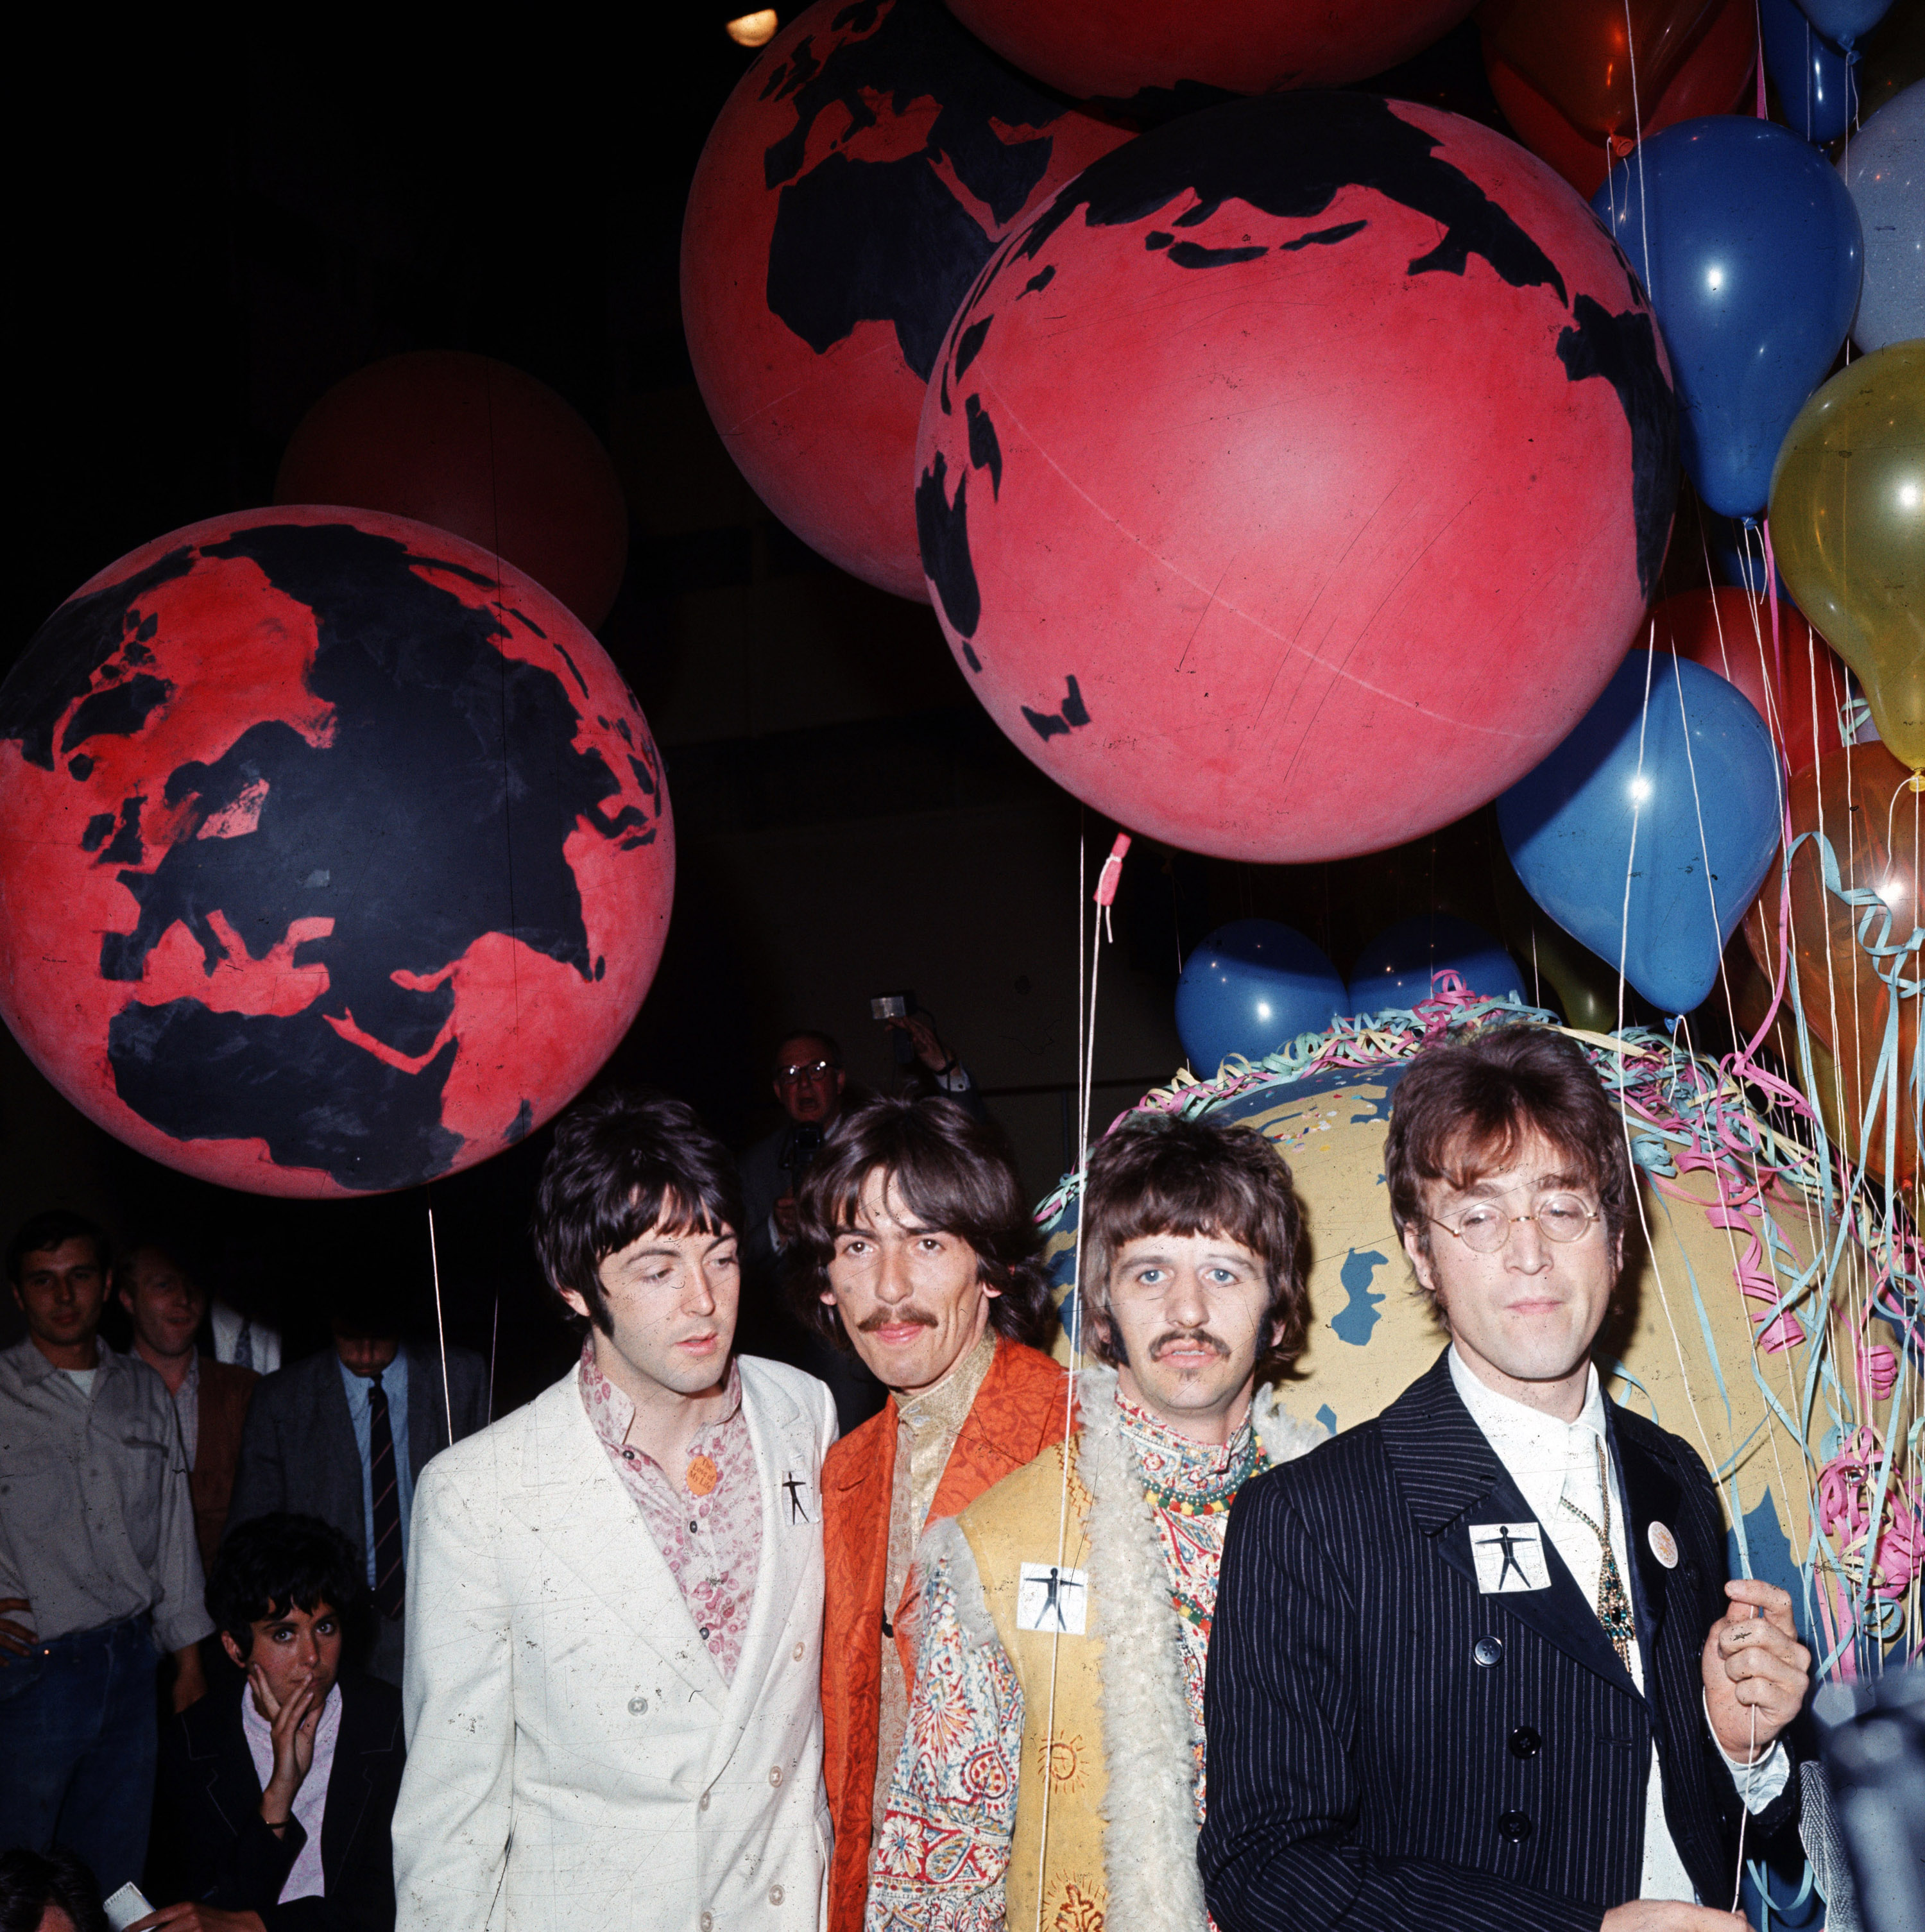 Битлз на подготовке к выступлению на Our World, студия EMI июнь 1967. Иллюстрация к песне All You Need Is Love (The Beatles)